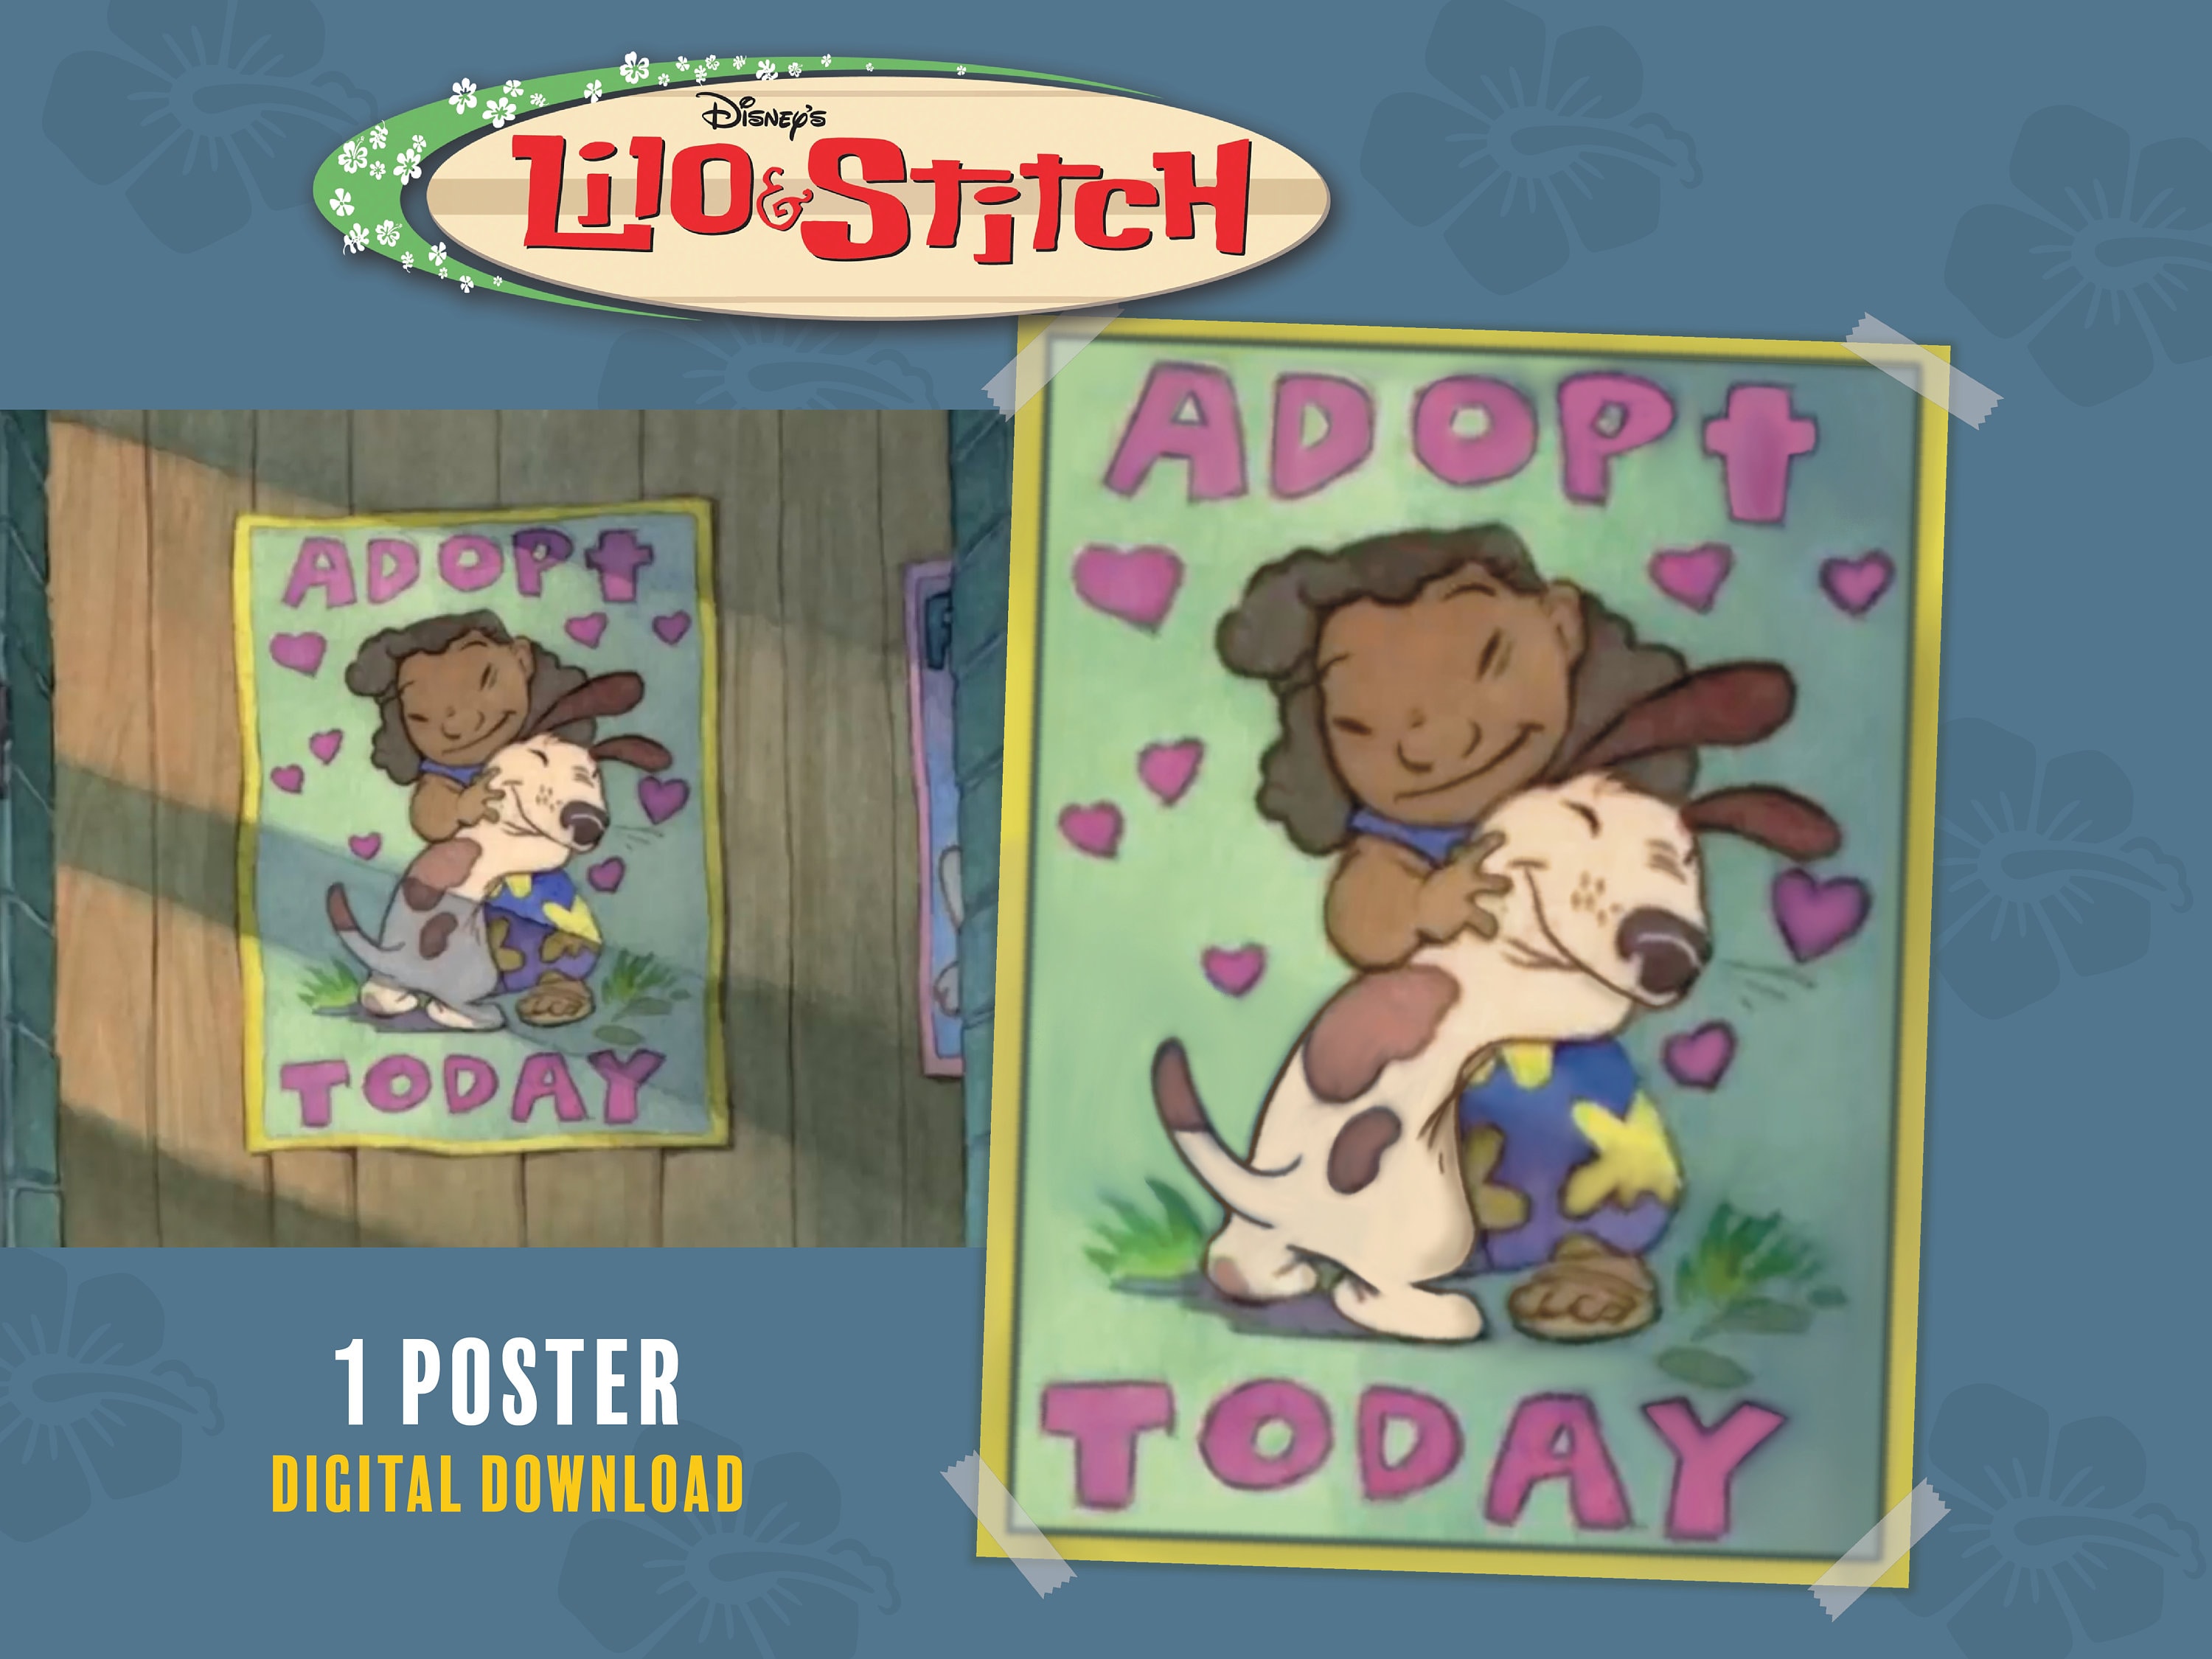 Lilo & Stitch movie poster print #5 Disney - 11 x 14 inches Lilo & Stitch  poster